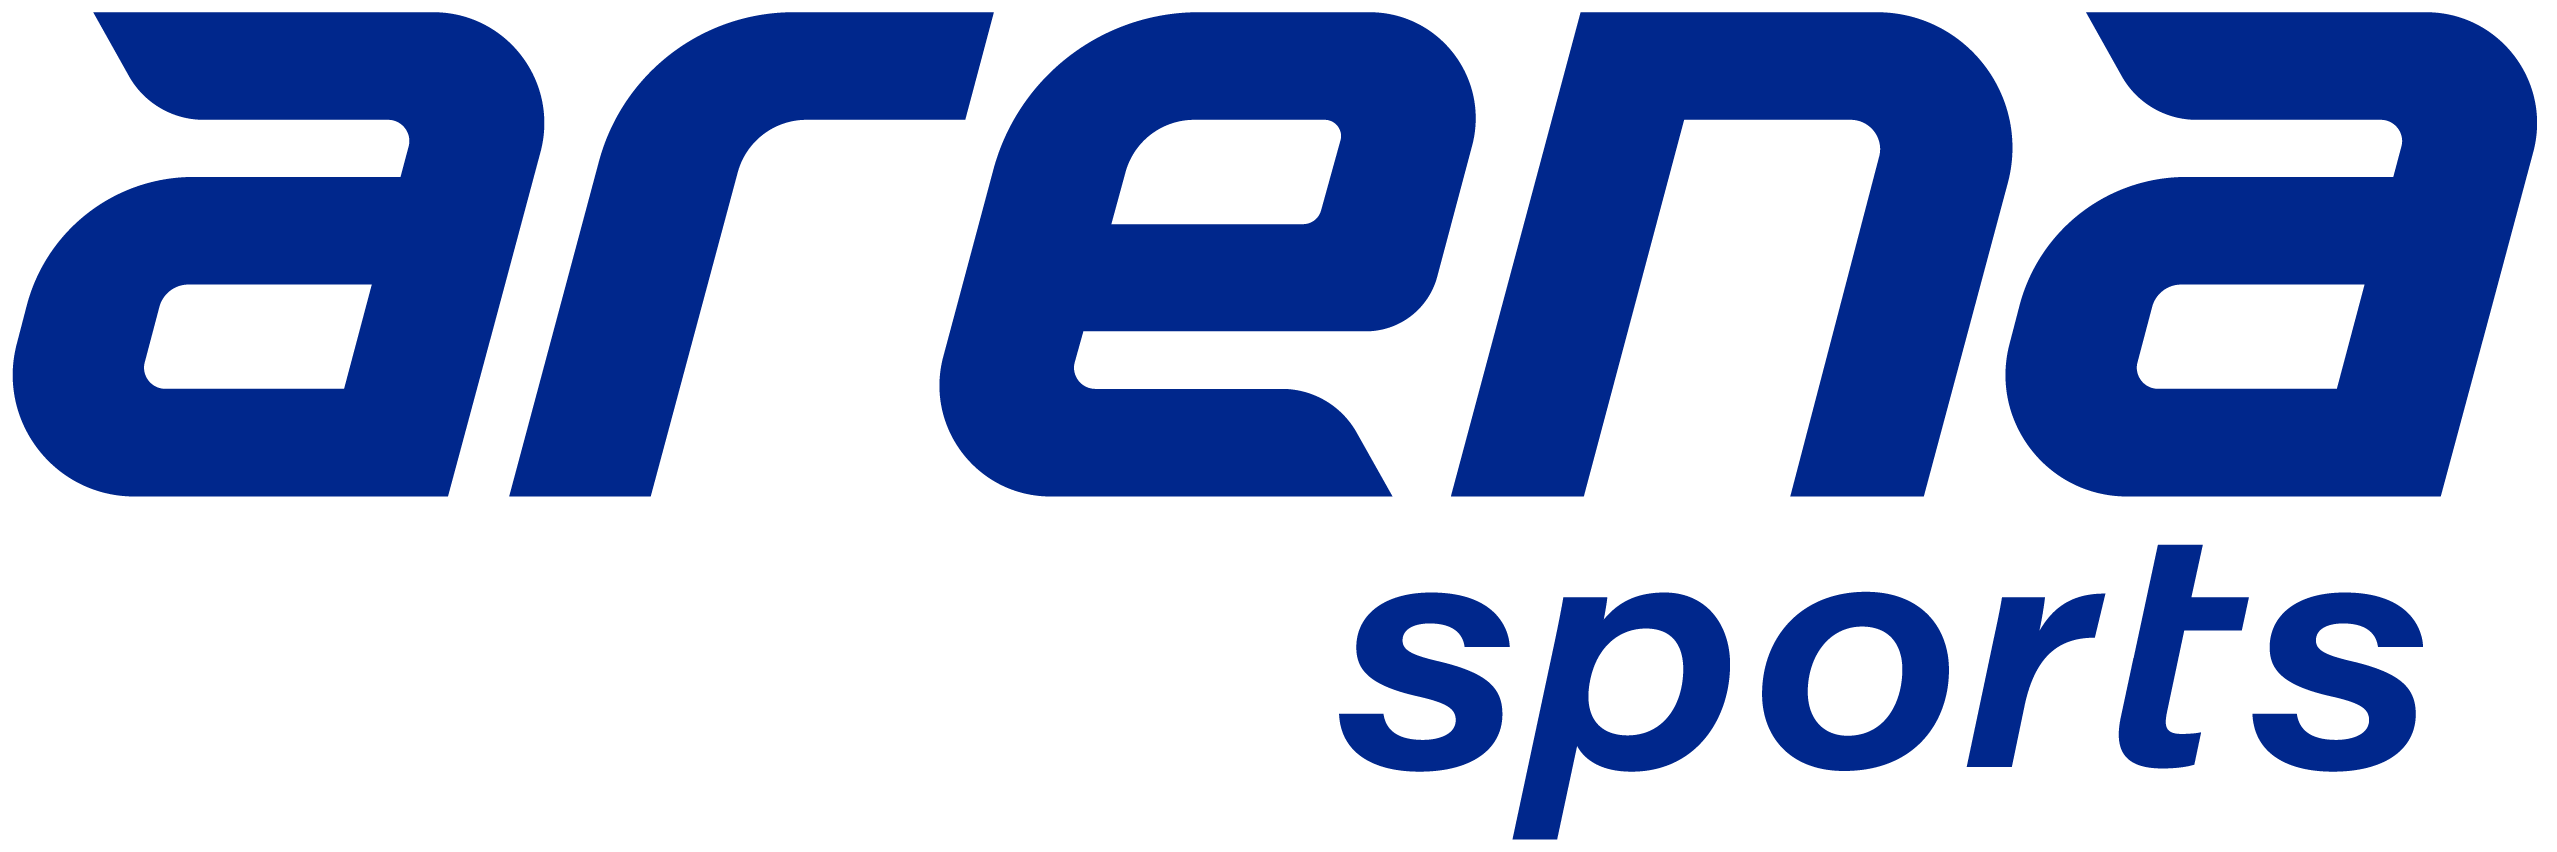 Arena Sports logo